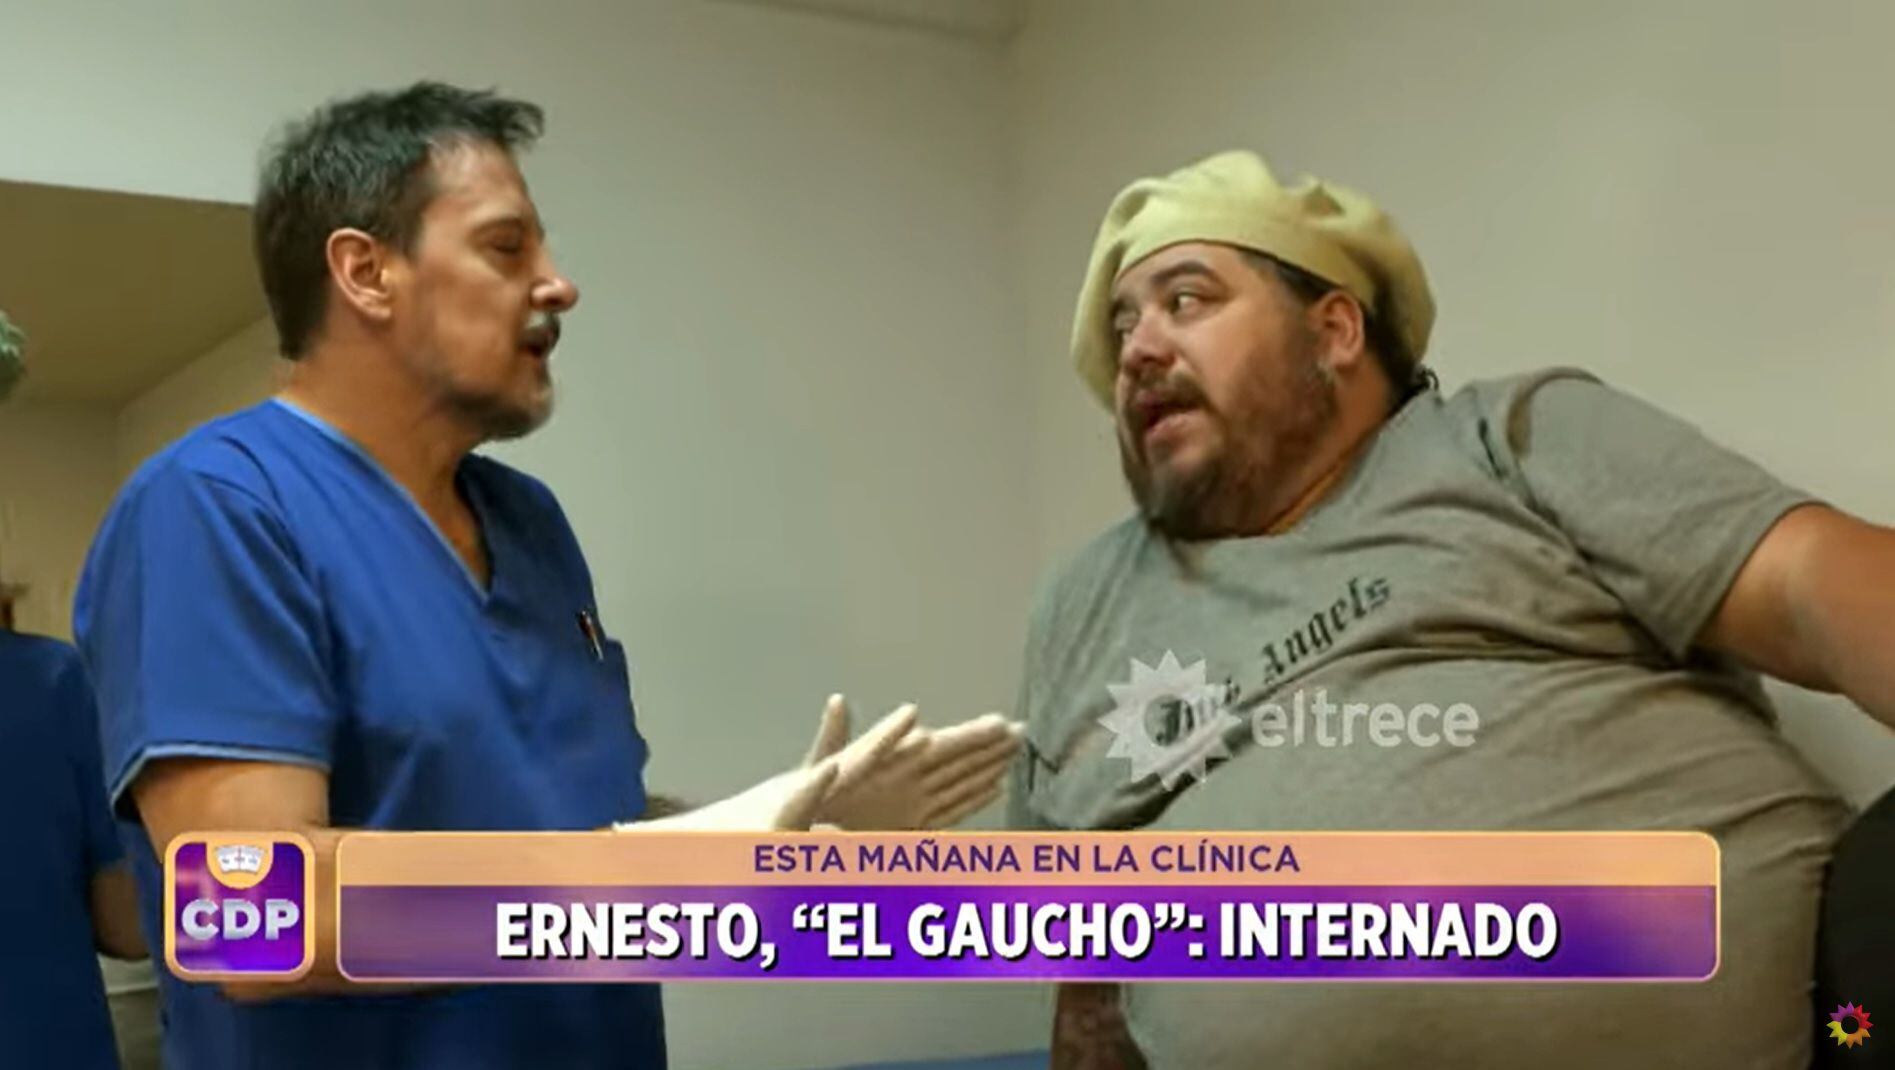 Ernesto, participante de “Cuestión de Peso” quedó internado el primer día de tratamiento. Captura del video.